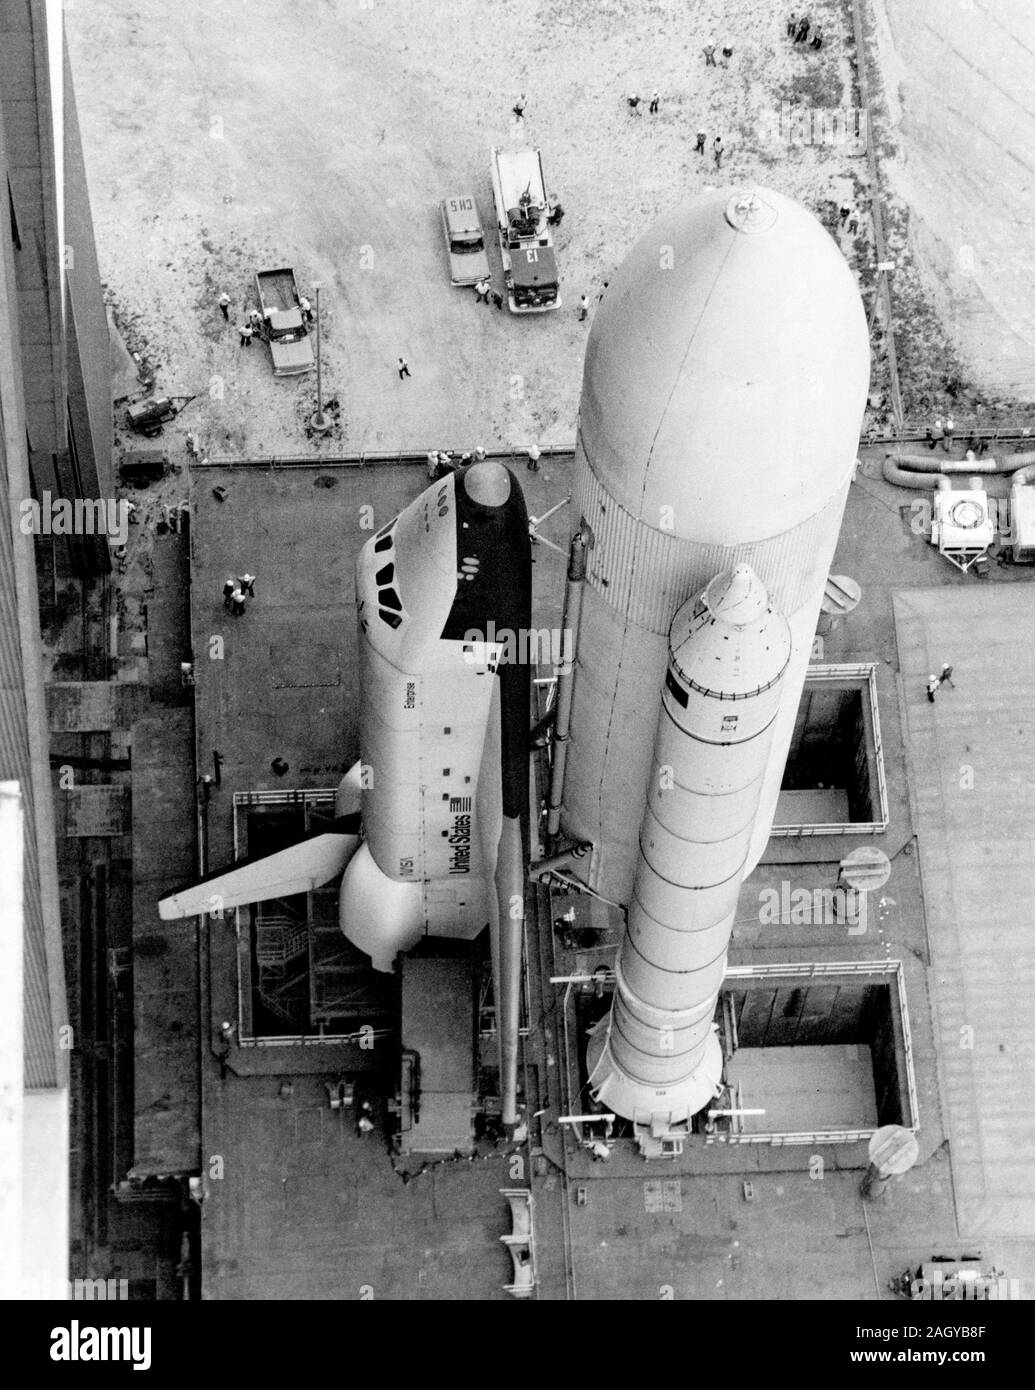 Transbordador espacial Enterprise realizó su primera aparición acoplada a contenedores/boosters de propelente de apoyo cluster, como se rodó desde el edificio de ensamblaje de vehículos en el Centro Espacial Kennedy en ruta a la plataforma de lanzamiento, el 1 de mayo de 1979. Crédito de la imagen: NASA Foto de stock